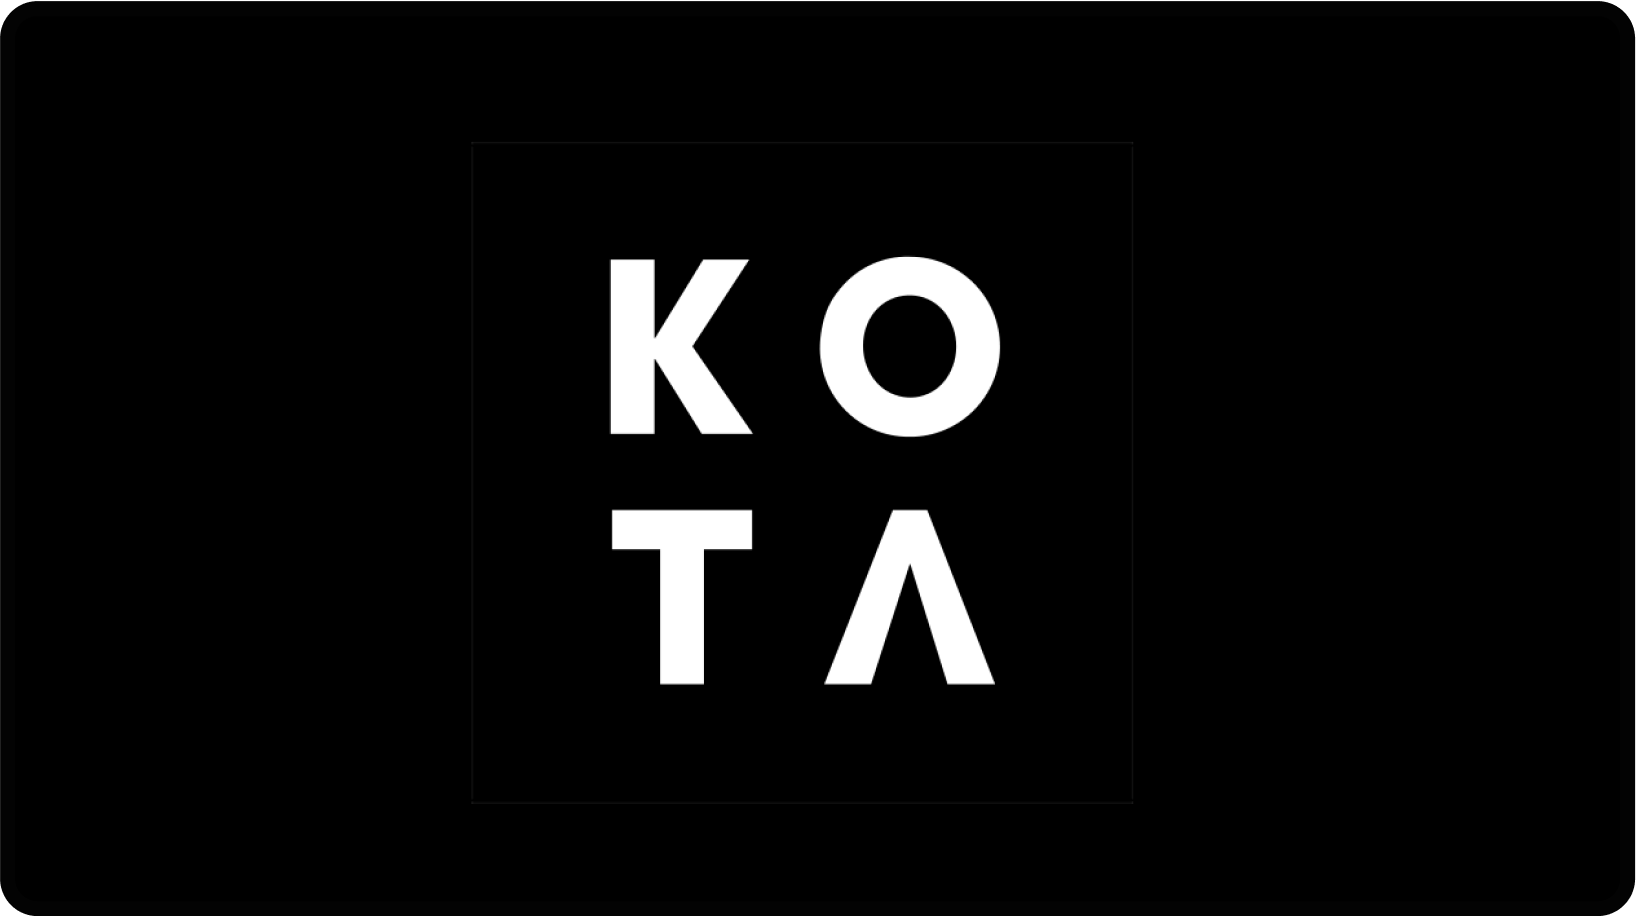 KOTA: Startup marketing agency in London (UK)